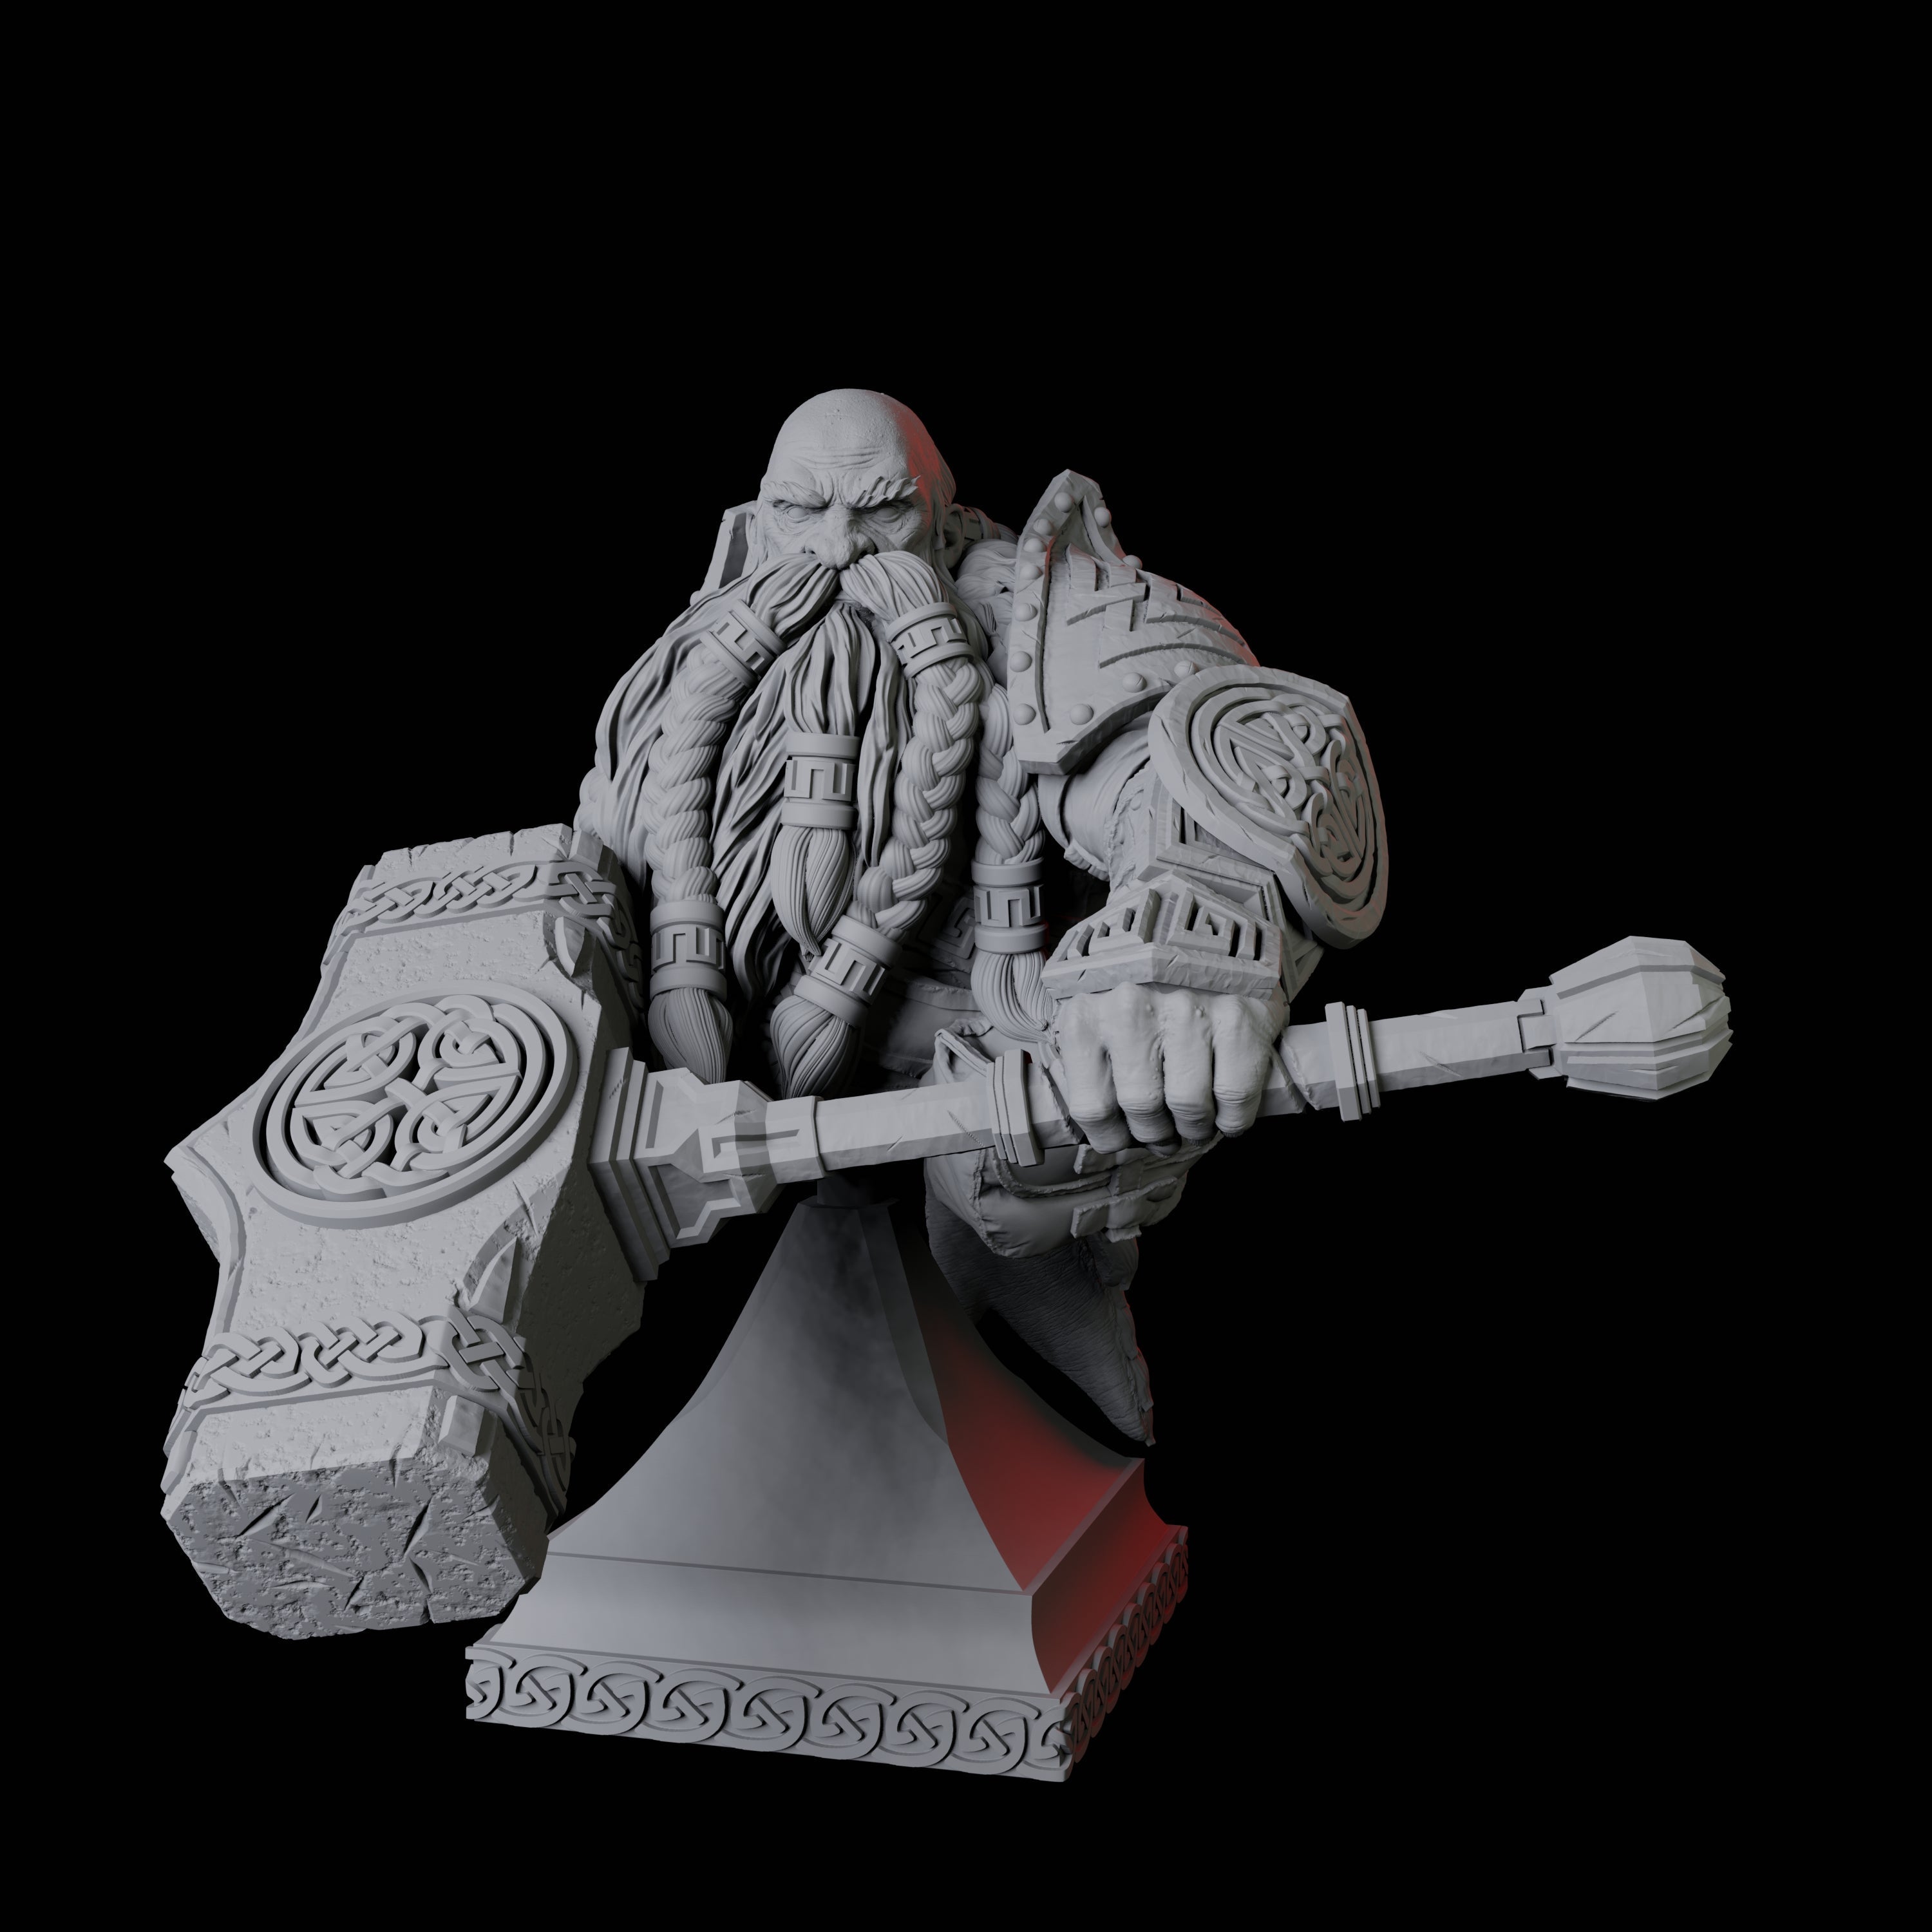 Battlehammer Dwarf Bust Miniature for Dungeons and Dragons